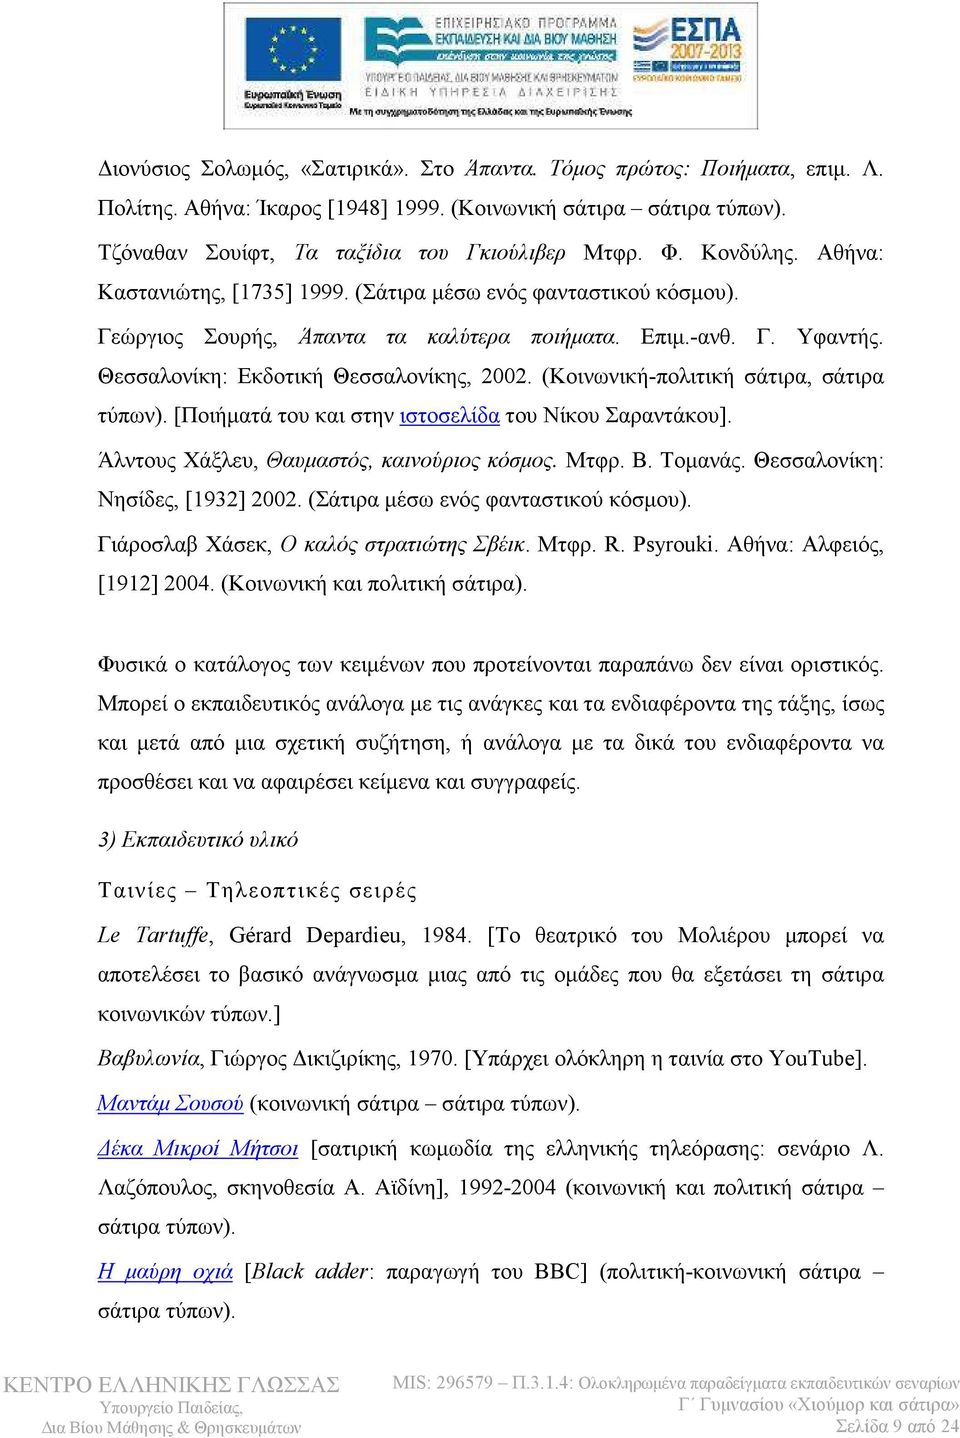 (Κοινωνική-πολιτική σάτιρα, σάτιρα τύπων). [Ποιήµατά του και στην ιστοσελίδα του Νίκου Σαραντάκου]. Άλντους Χάξλευ, Θαυµαστός, καινούριος κόσµος. Μτφρ. Β. Τοµανάς. Θεσσαλονίκη: Νησίδες, [1932] 2002.